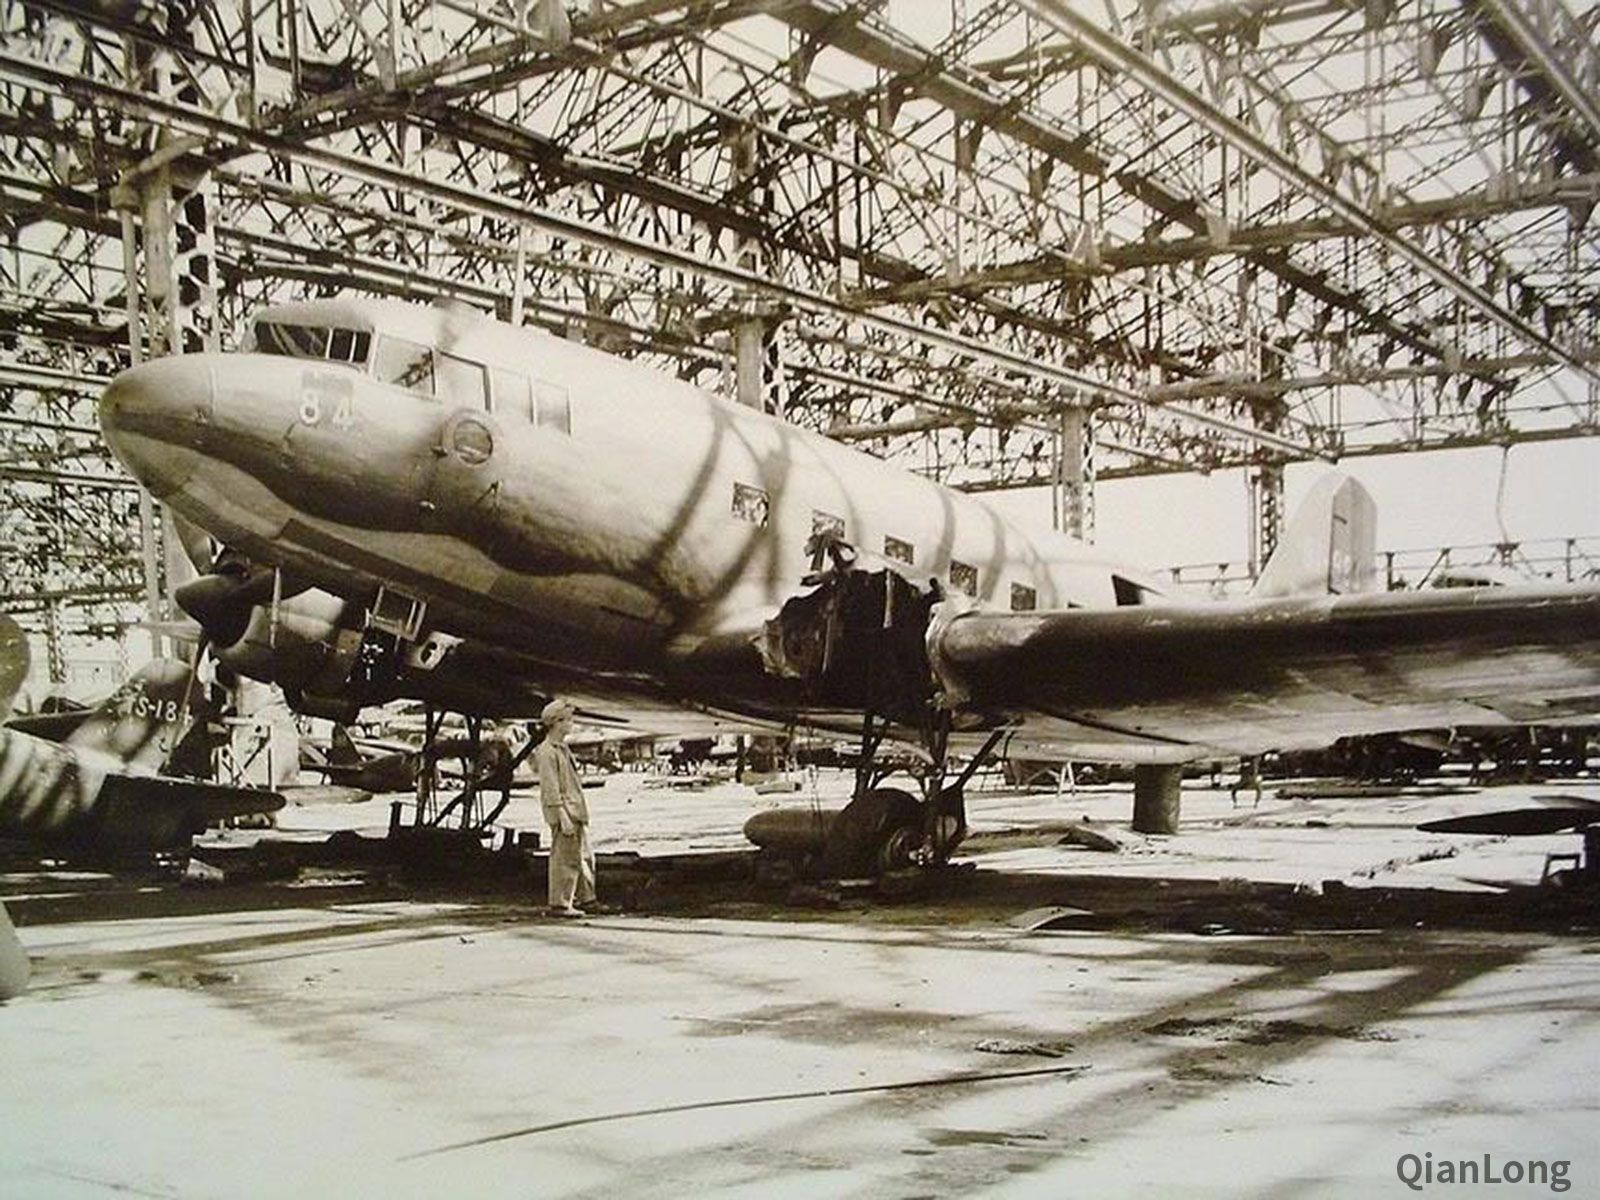 二战日本的l2d运输机与驼峰航线的c47运输机同款13